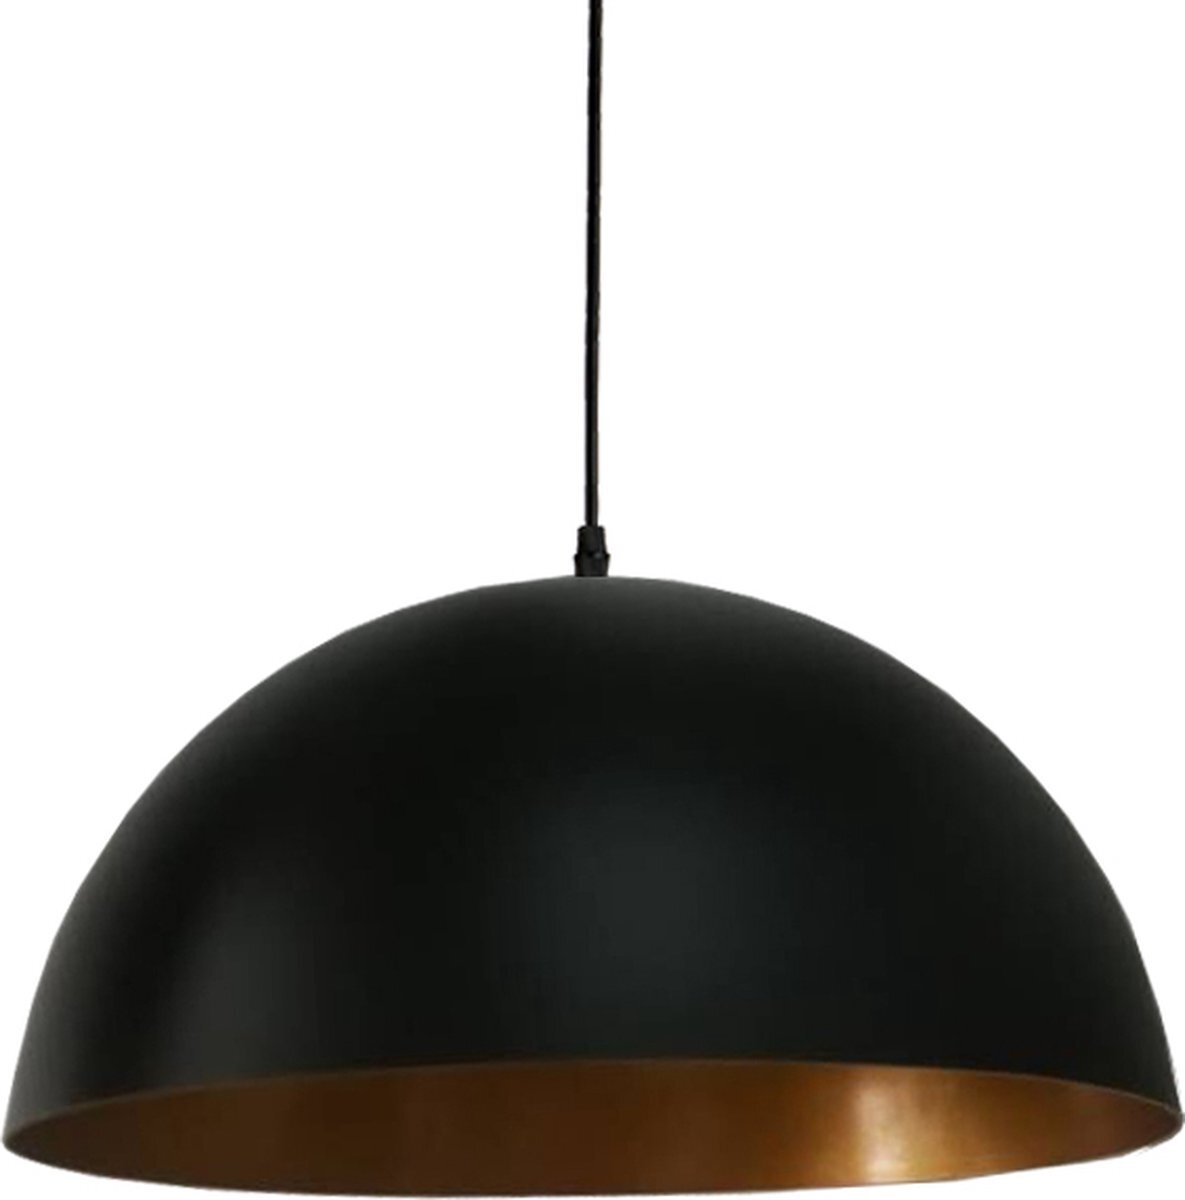 Homestyle Pro Zwarte hanglamp met reliëf - kamerlamp - Plafondlamp - Keukenlamp - Ø40 cm - Zwart - Metaal - Halfrond - Industrieel - in lengte verstelbaar - E27 - 240V - zonder lichtbron